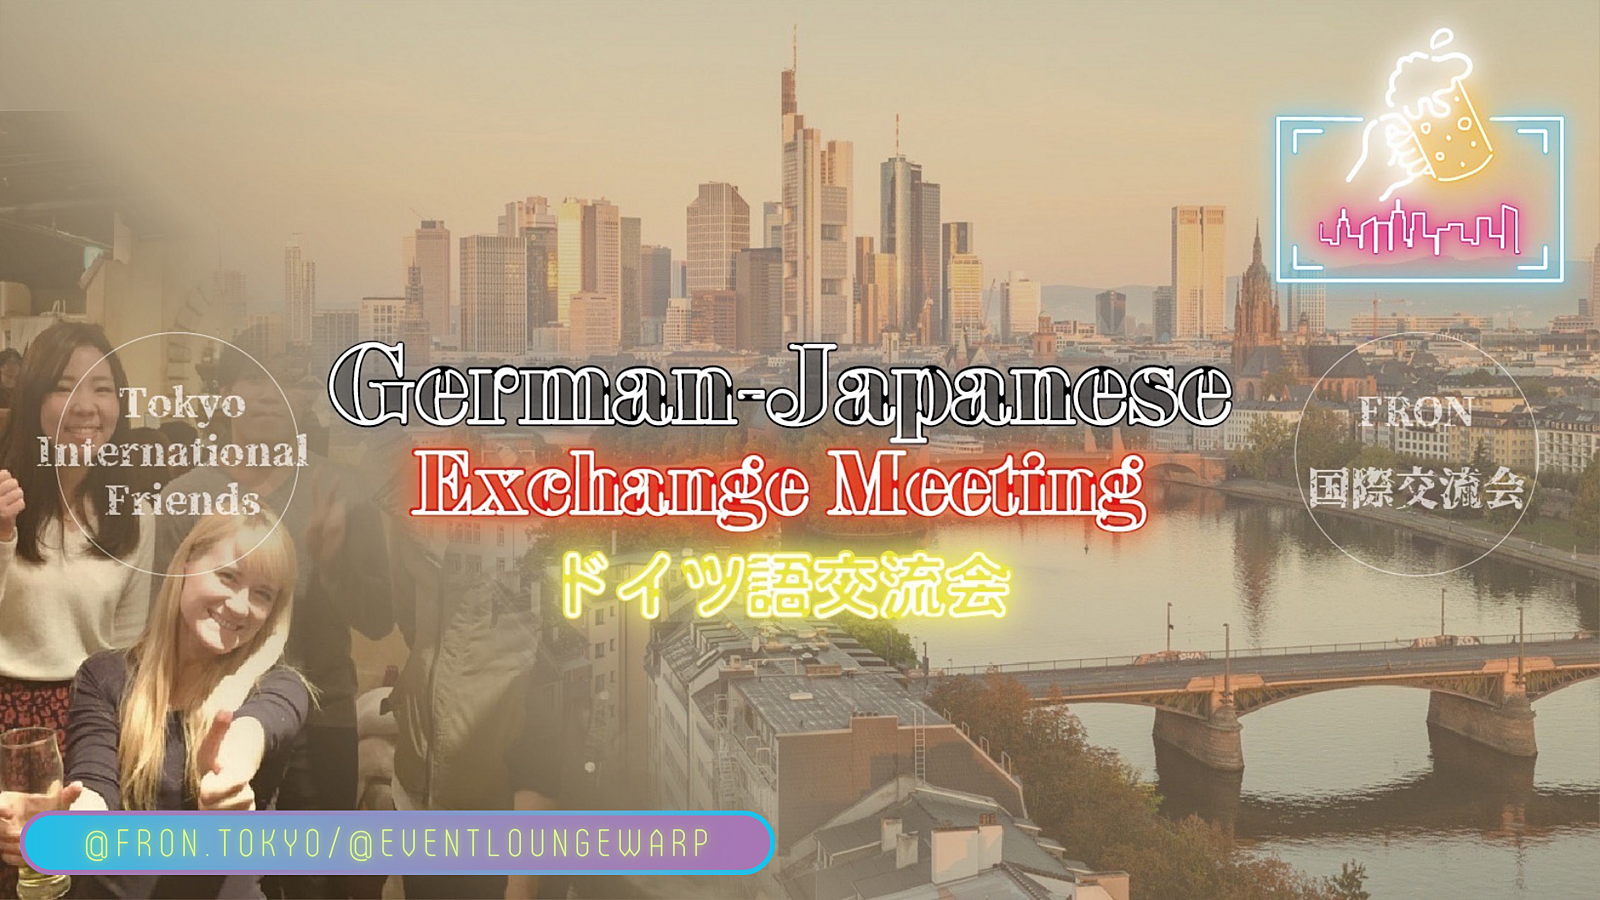  3/10(日)14:00~ ドイツ語交流会 🇩🇪 German-Japanese Exchange Meeting☆Sonntag, 10. März♪